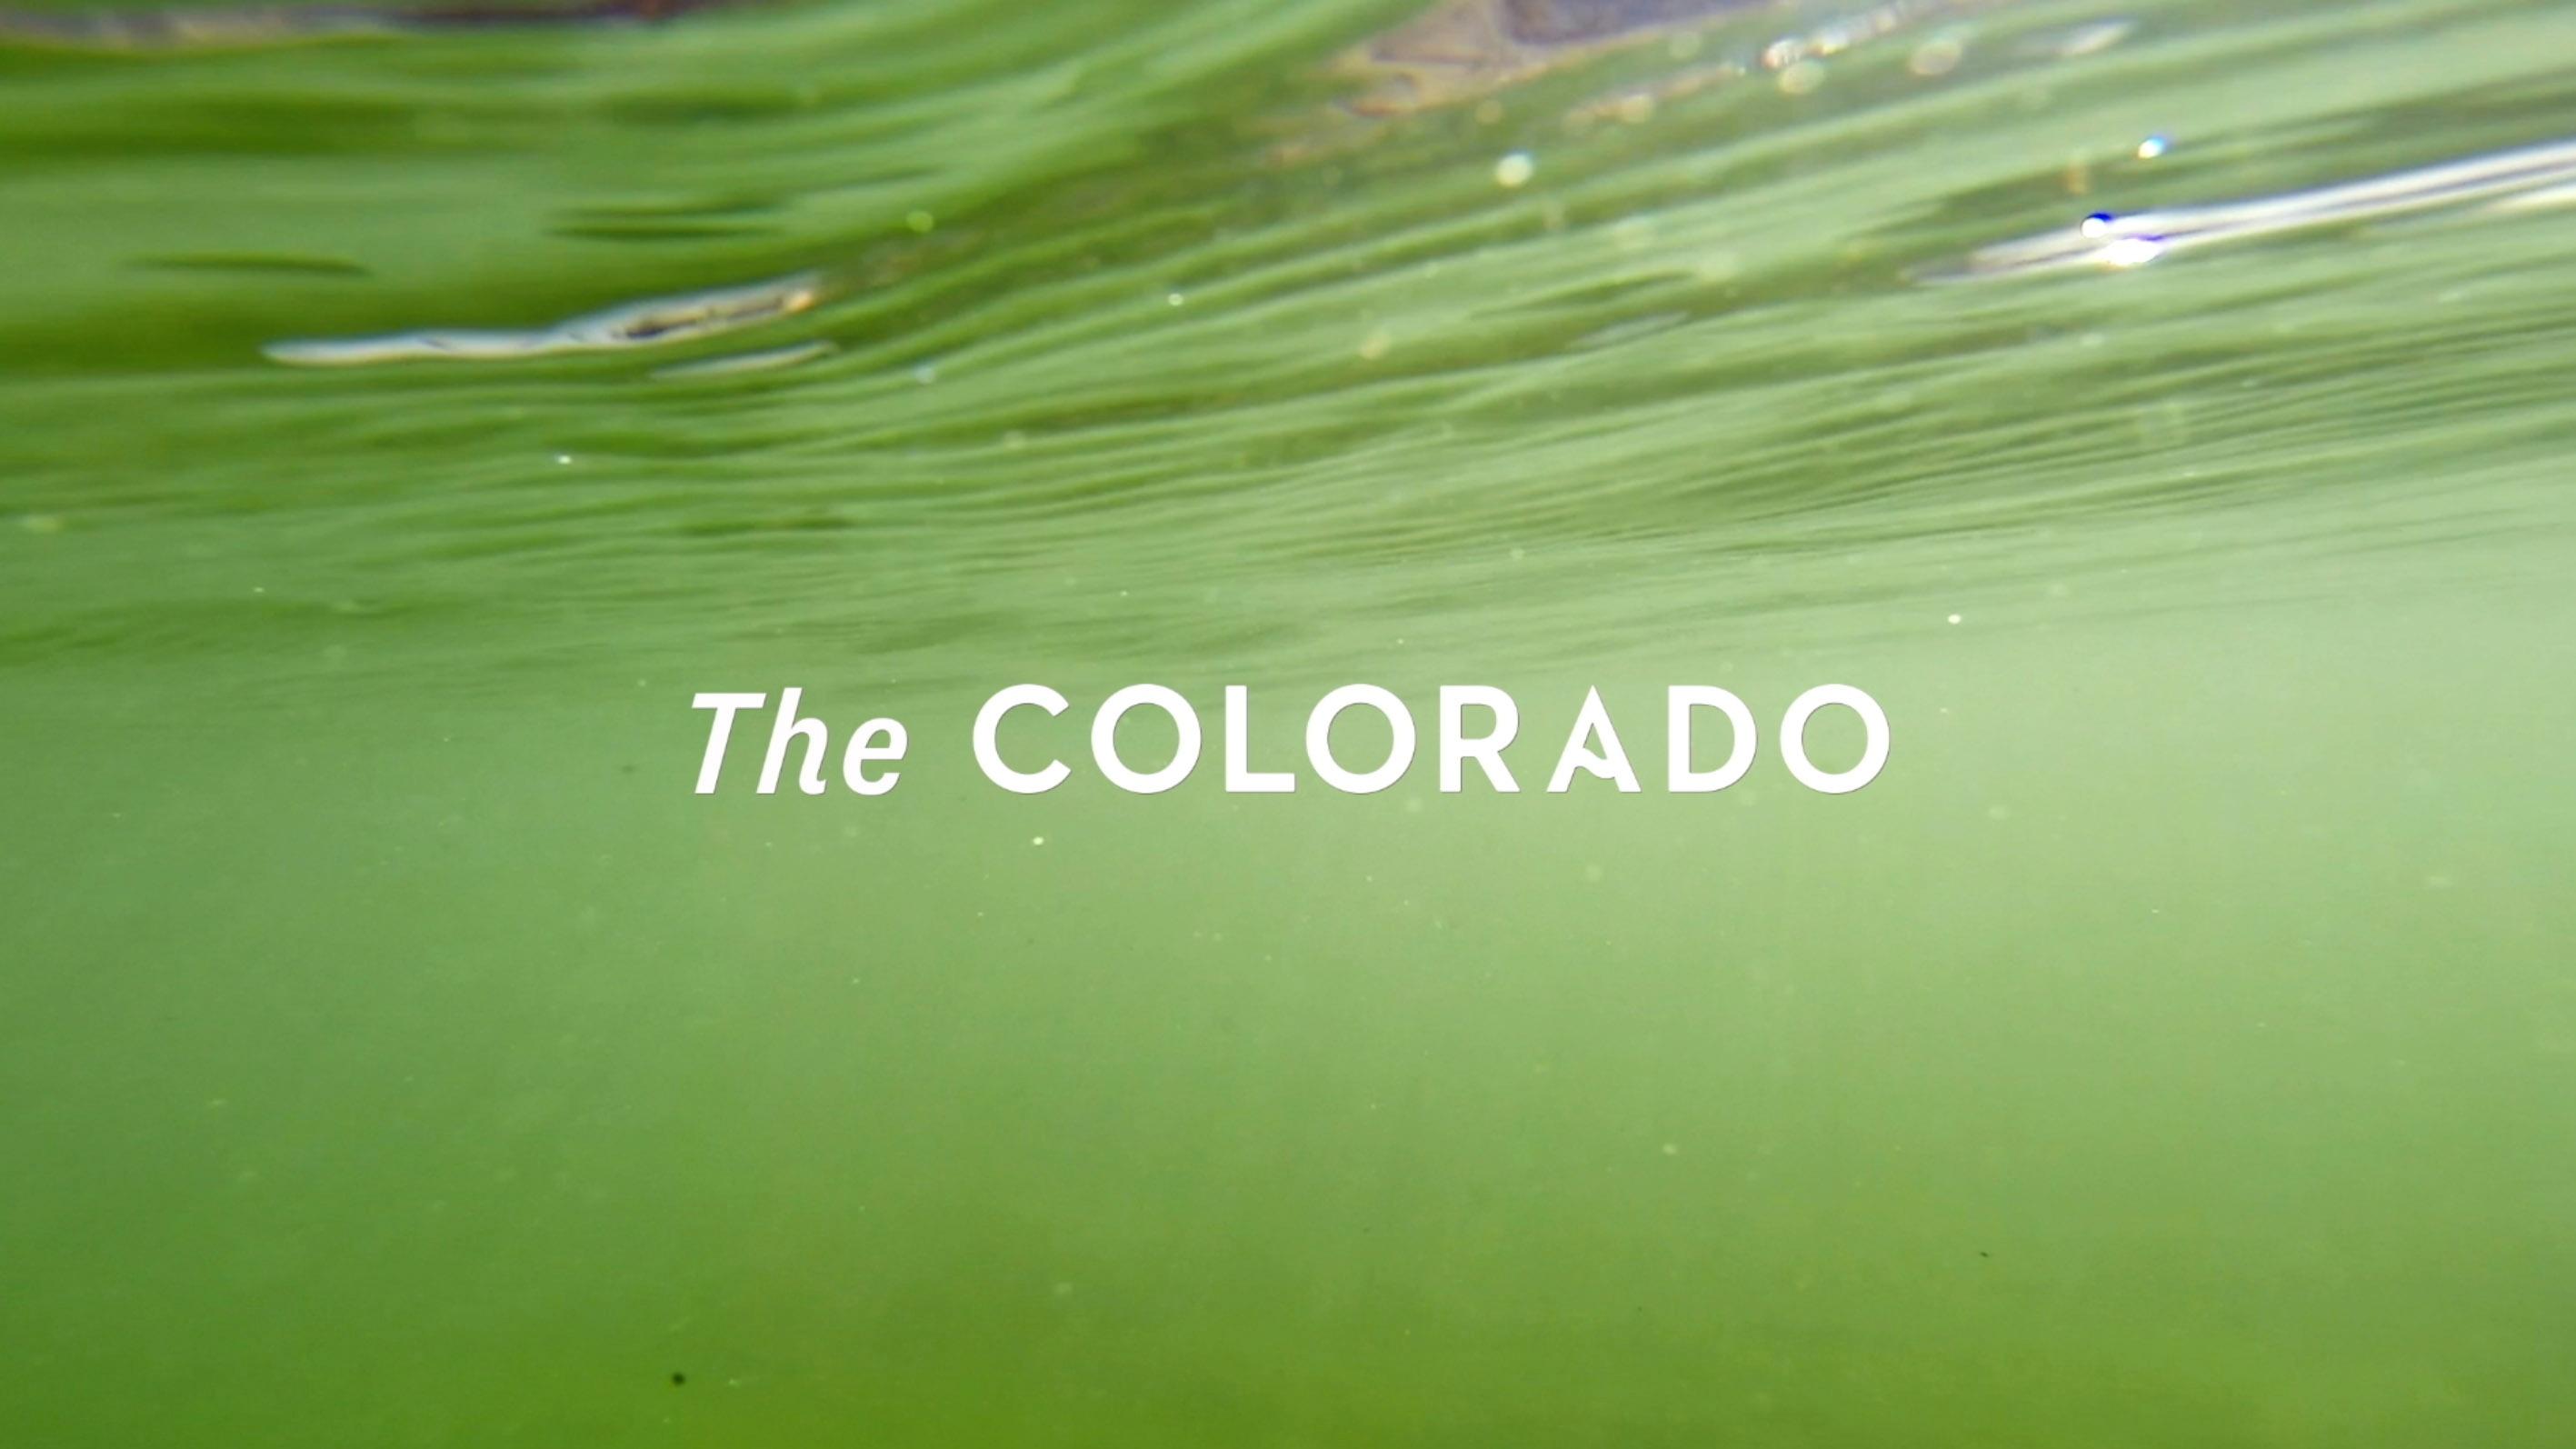 The Colorado